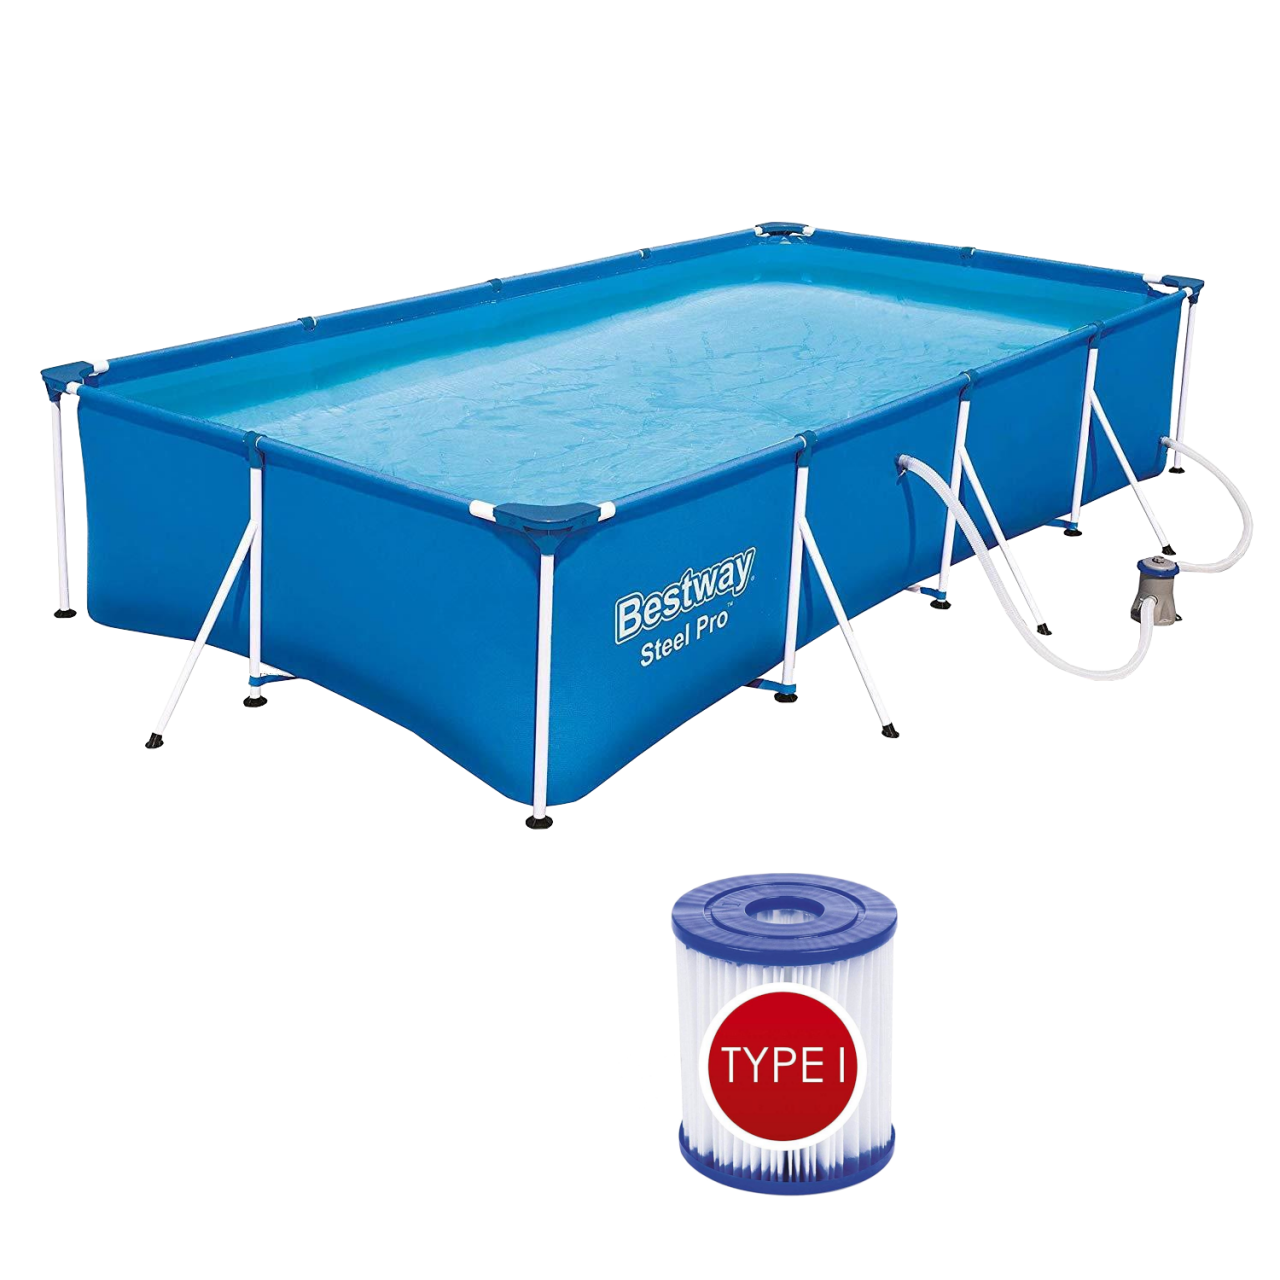 Bestway 56424 Frame Pool Steel Pro mit Filterpumpe Schwimmbecken 400x211x81cm